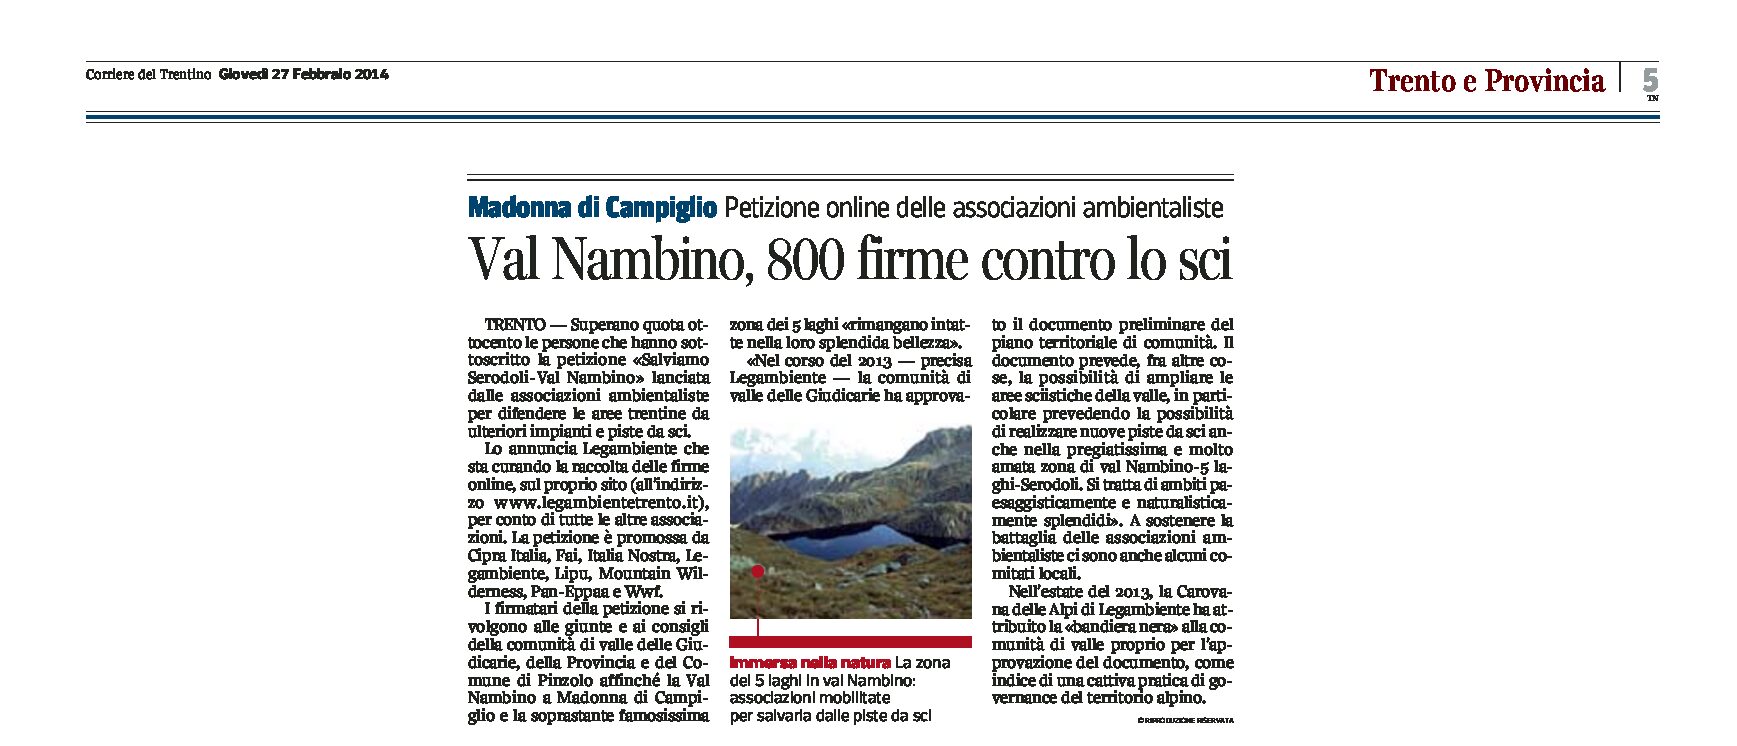 Petizione “Salviamo Serodoli-Val Nambino”: 800 firme contro lo sci